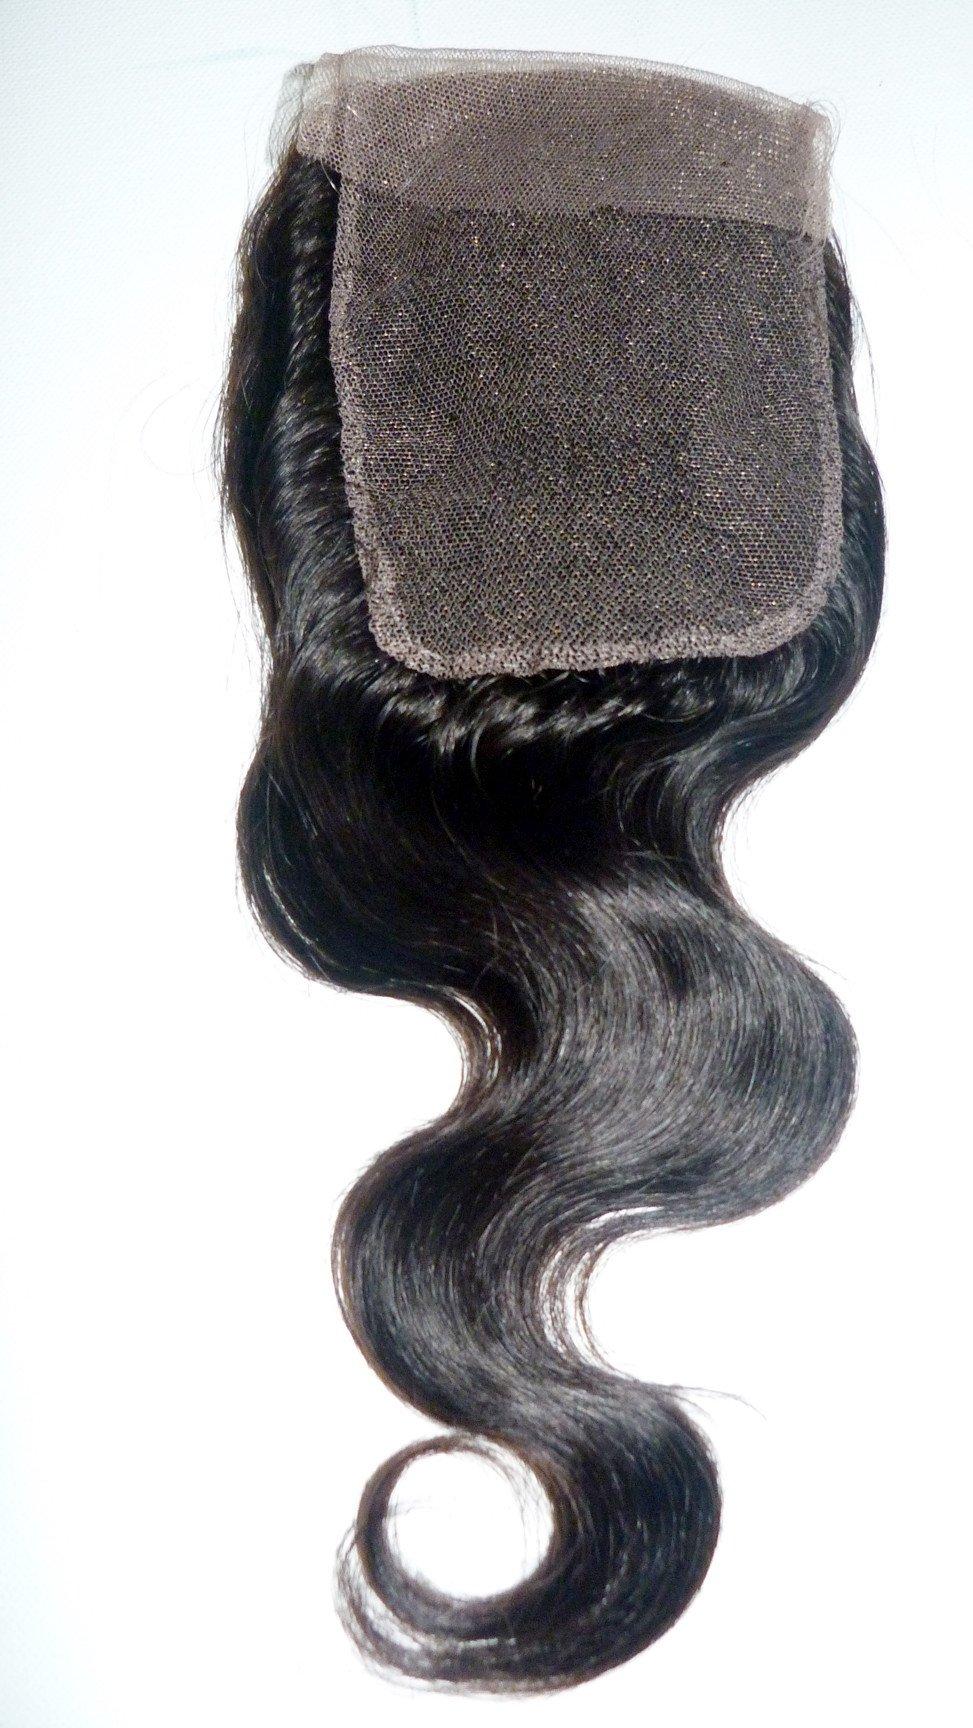 סגירת תחרה של רמי בתולה הודית - 4"x4"-שיער ויופי בתולה, תוספות השיער הטובות ביותר, שיער אנושי בתולה אמיתי.